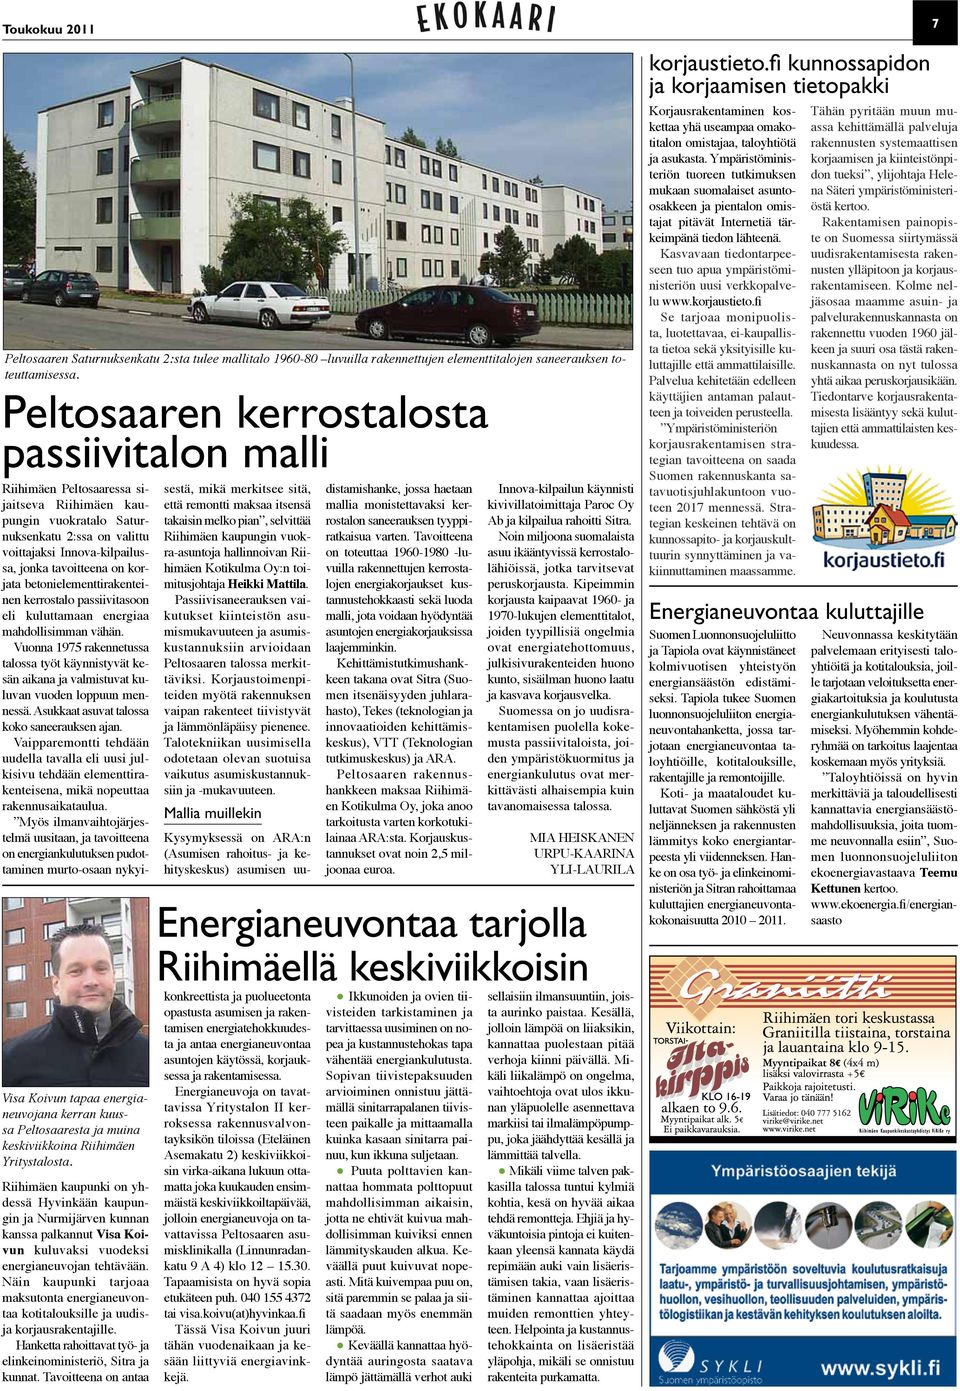 Riihimäen kaupunki on yhdessä Hyvinkään kaupungin ja Nurmijärven kunnan kanssa palkannut Visa Koivun kuluvaksi vuodeksi energianeuvojan tehtävään.